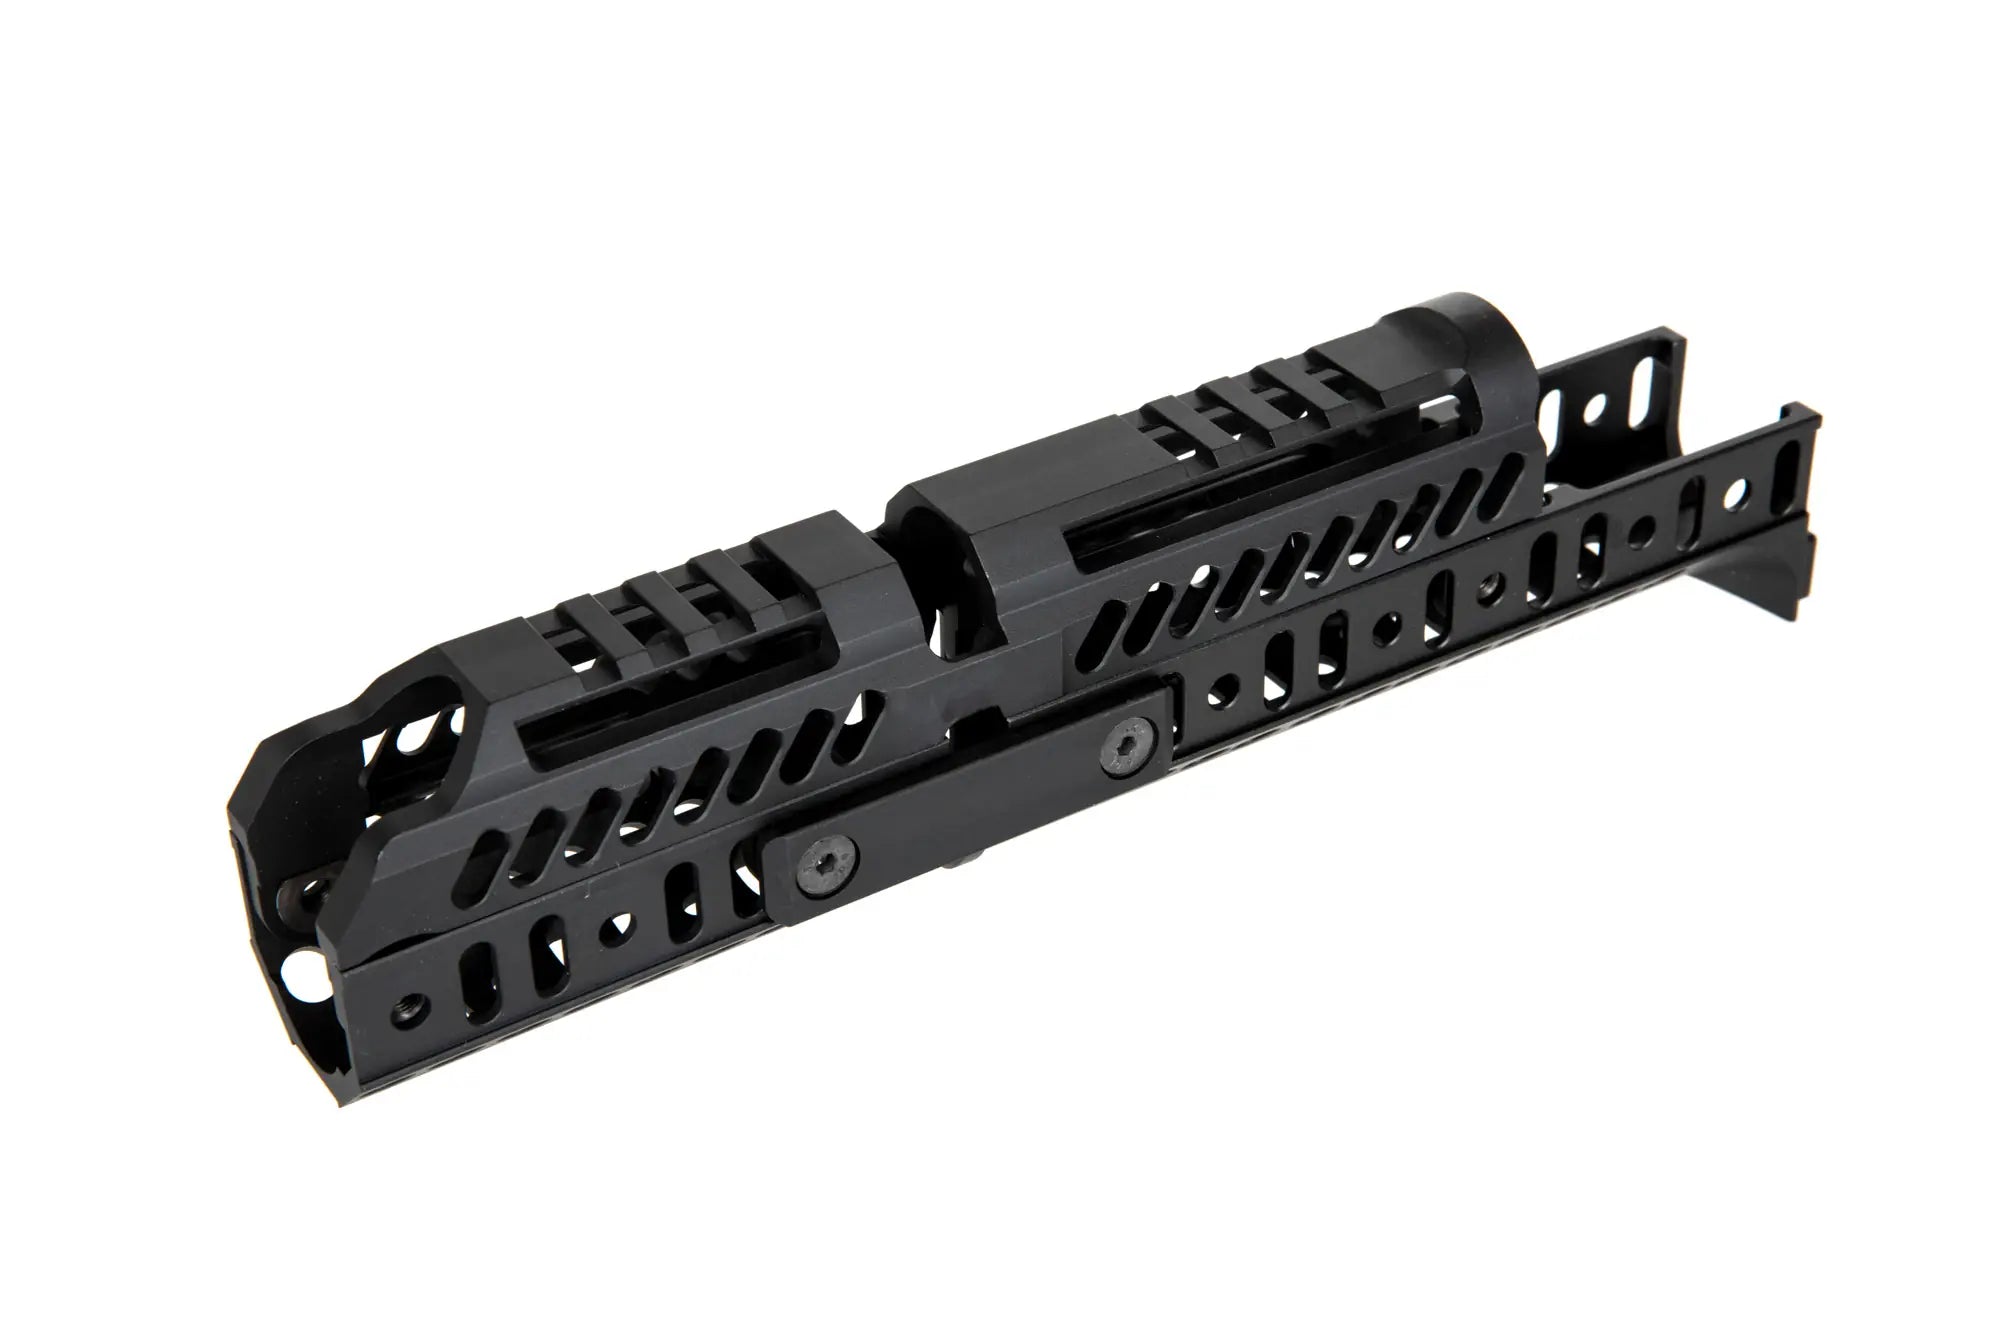 Sport-1 Rail Set for AK-74/ AK-105 series - Black